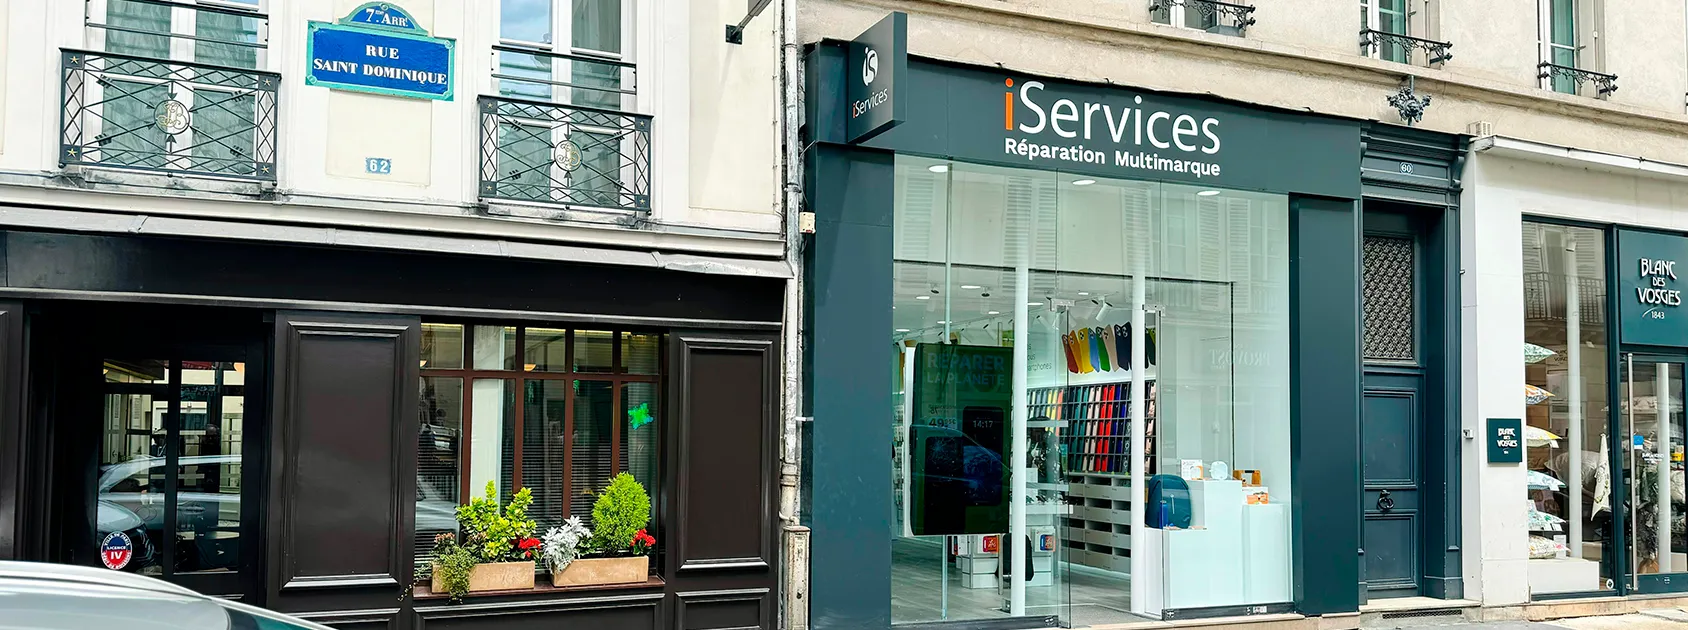 iServices a déjà ouvert son magasin à Saint Dominique  blog post